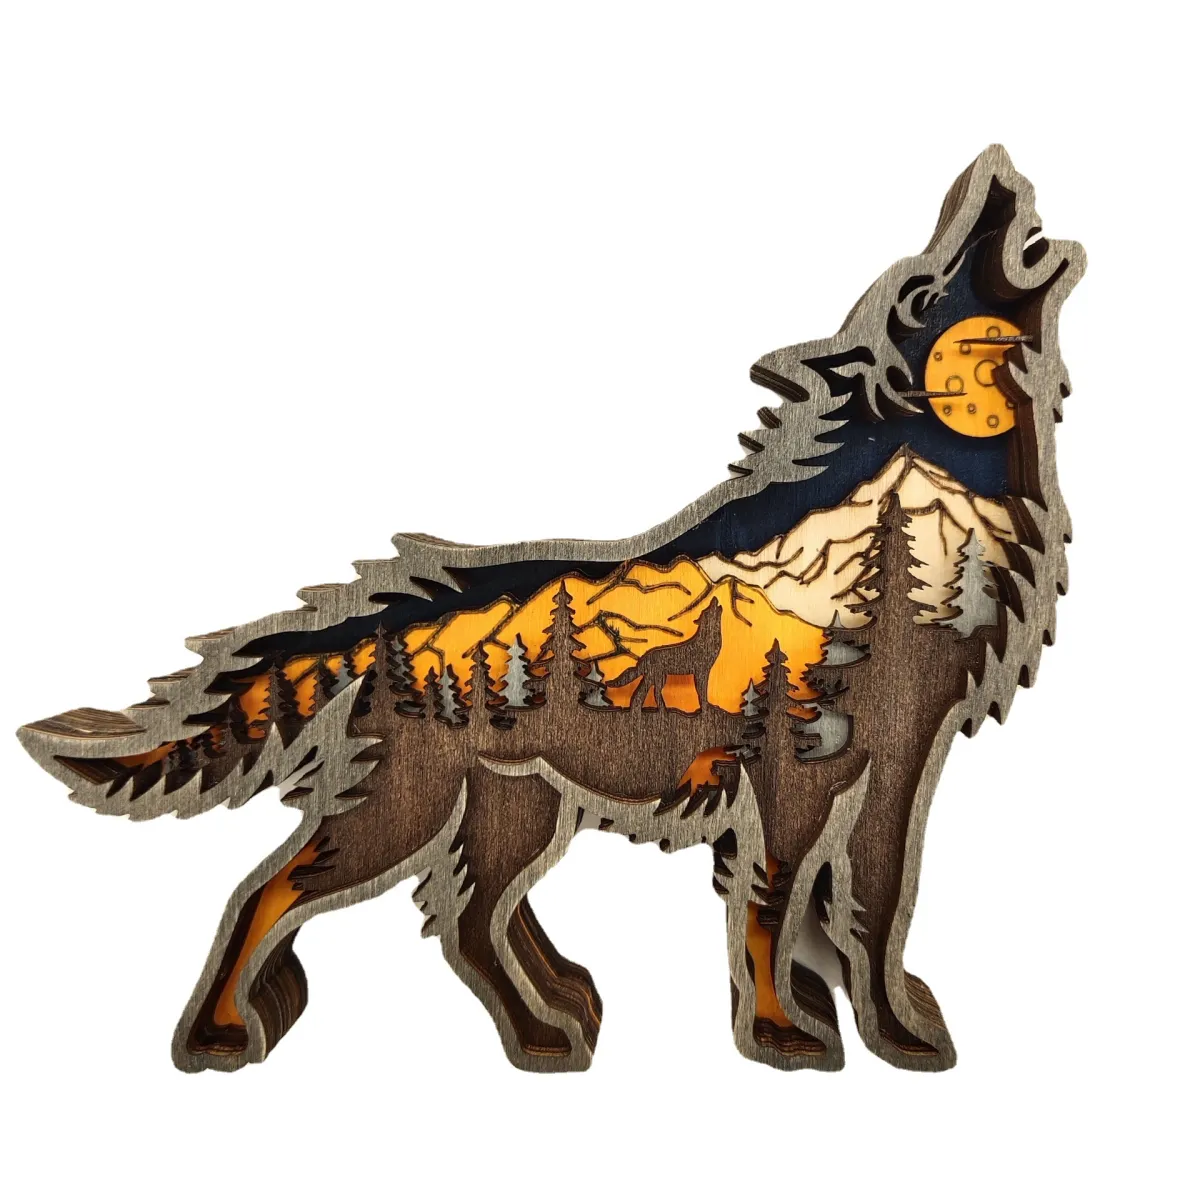 Mô hình gỗ điêu khắc hình chó sói, phối cảnh 3D, kích thước ...